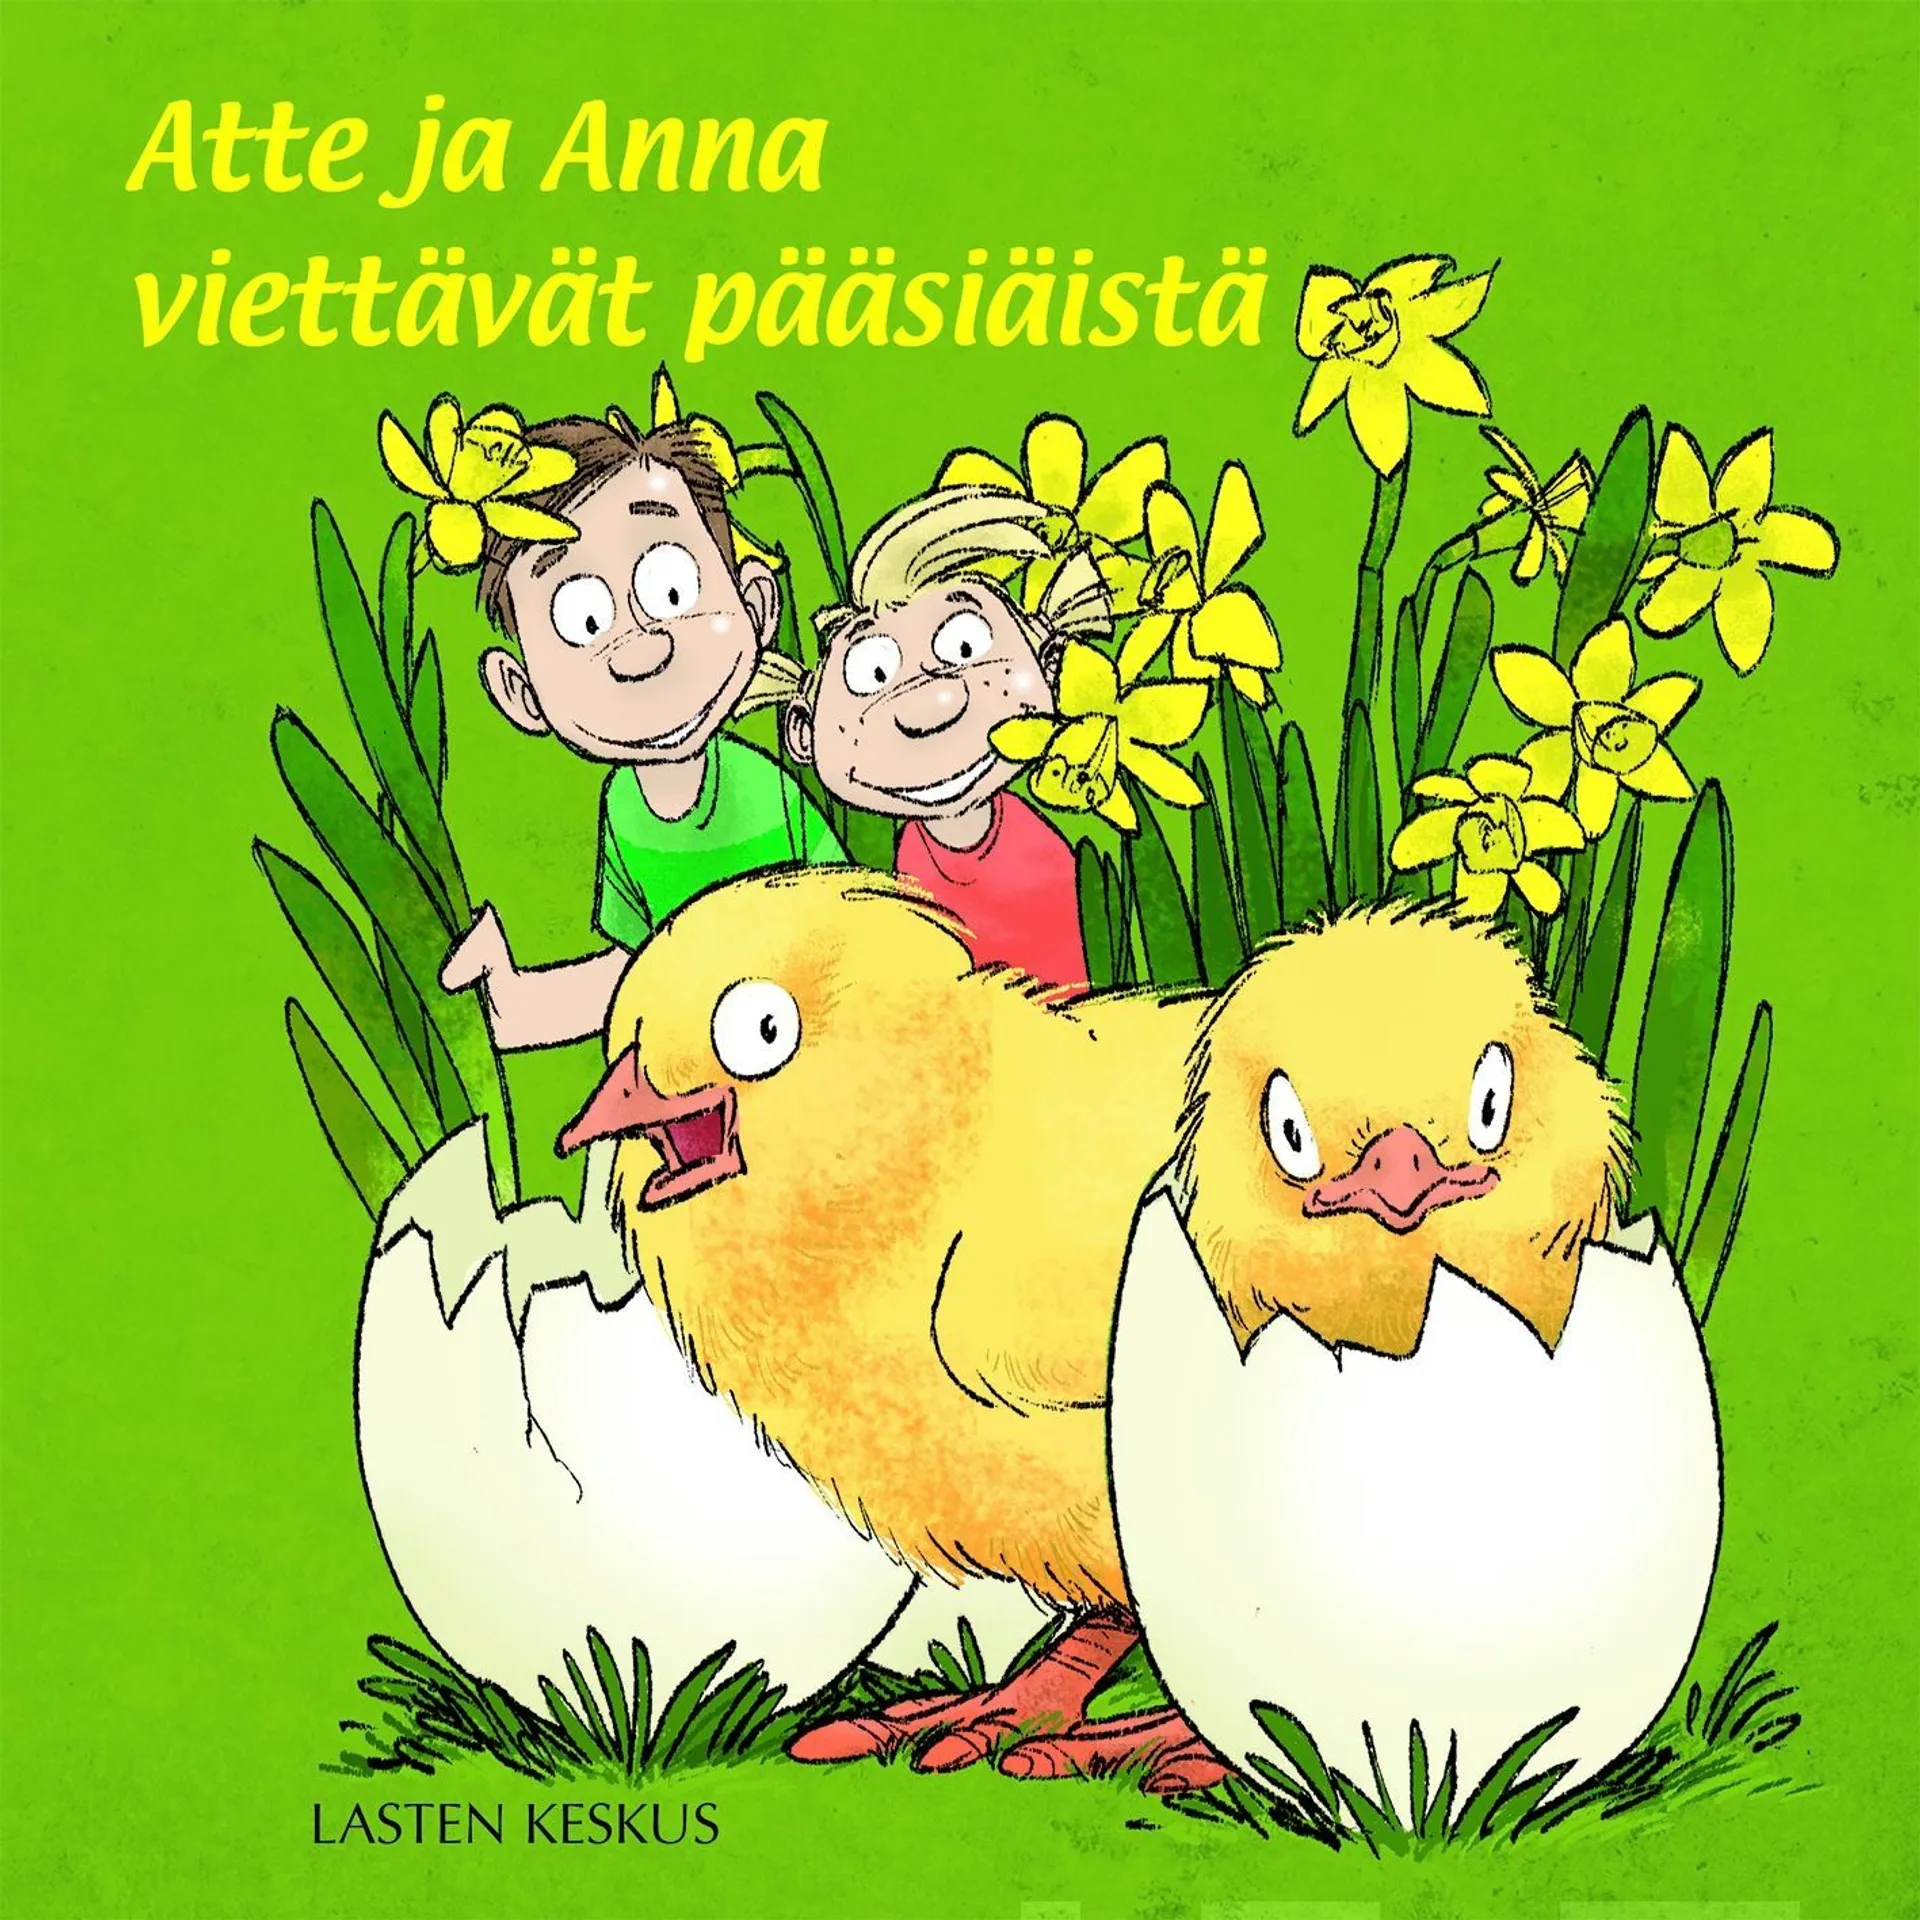 Issakainen, Atte ja Anna viettävät pääsiäistä